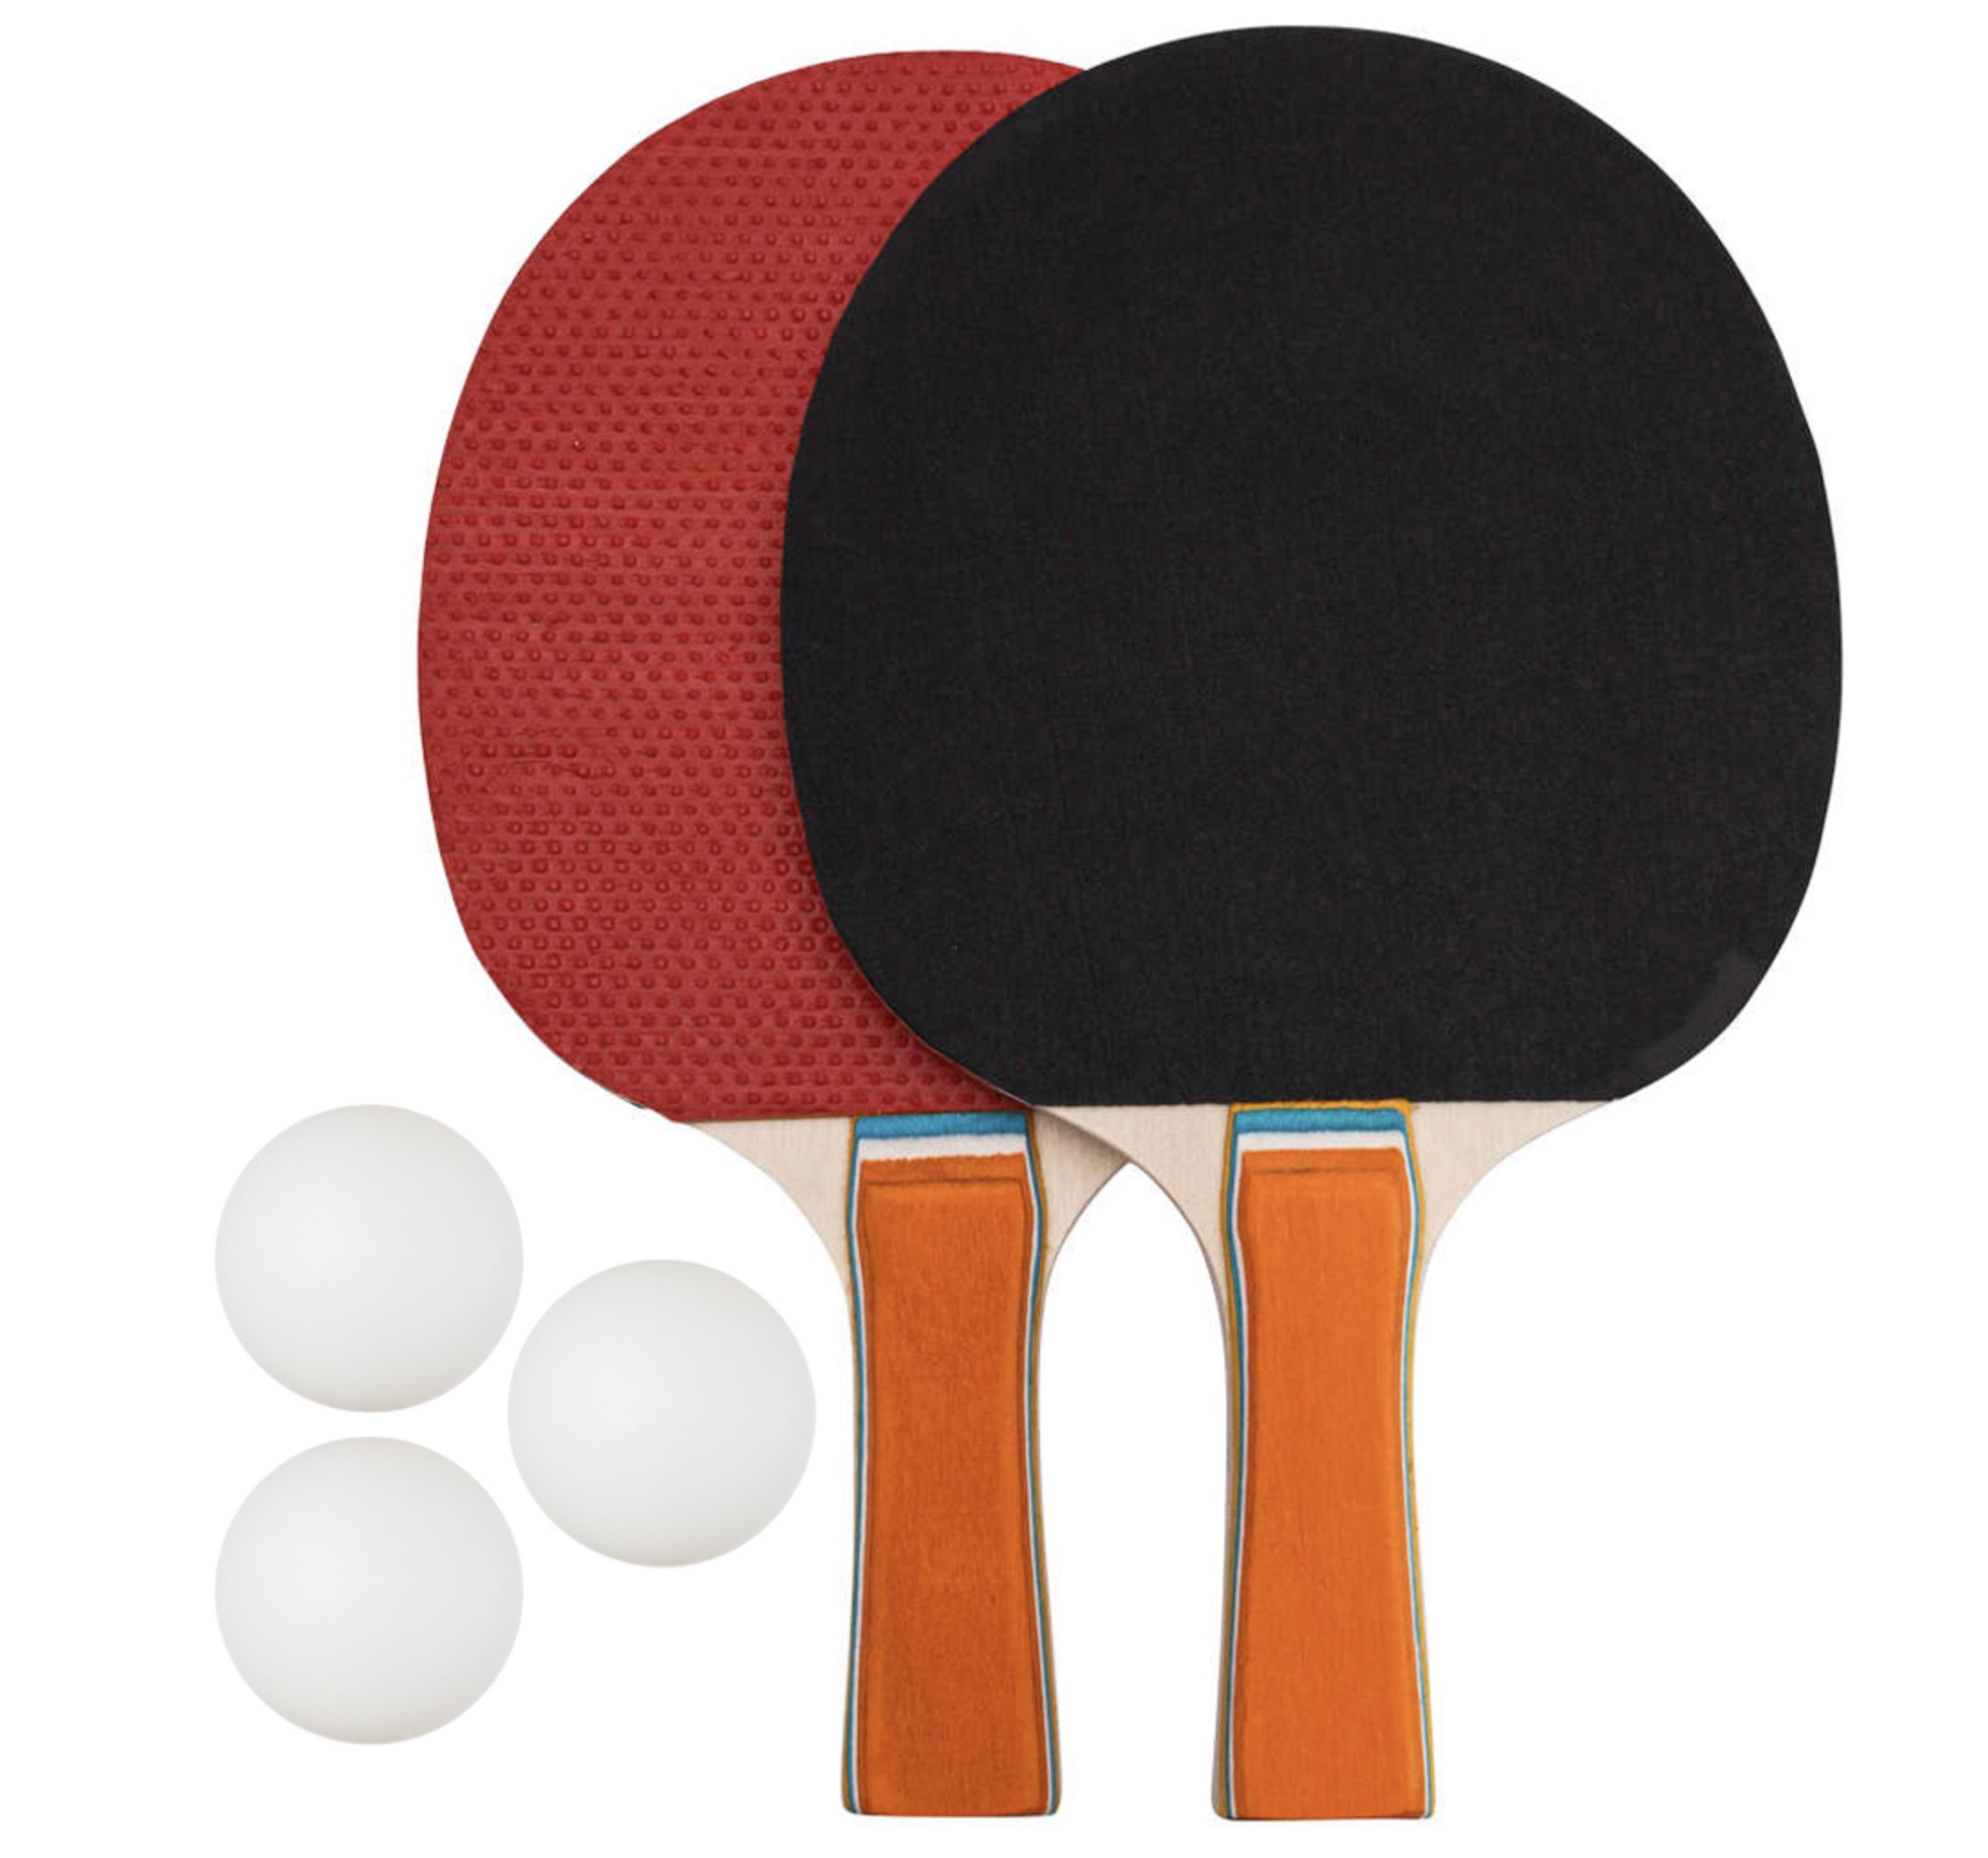 2er Set Jelex Topspin Tischtennis Schläger mit 3 Bällen für 8,94€ (statt 15€)